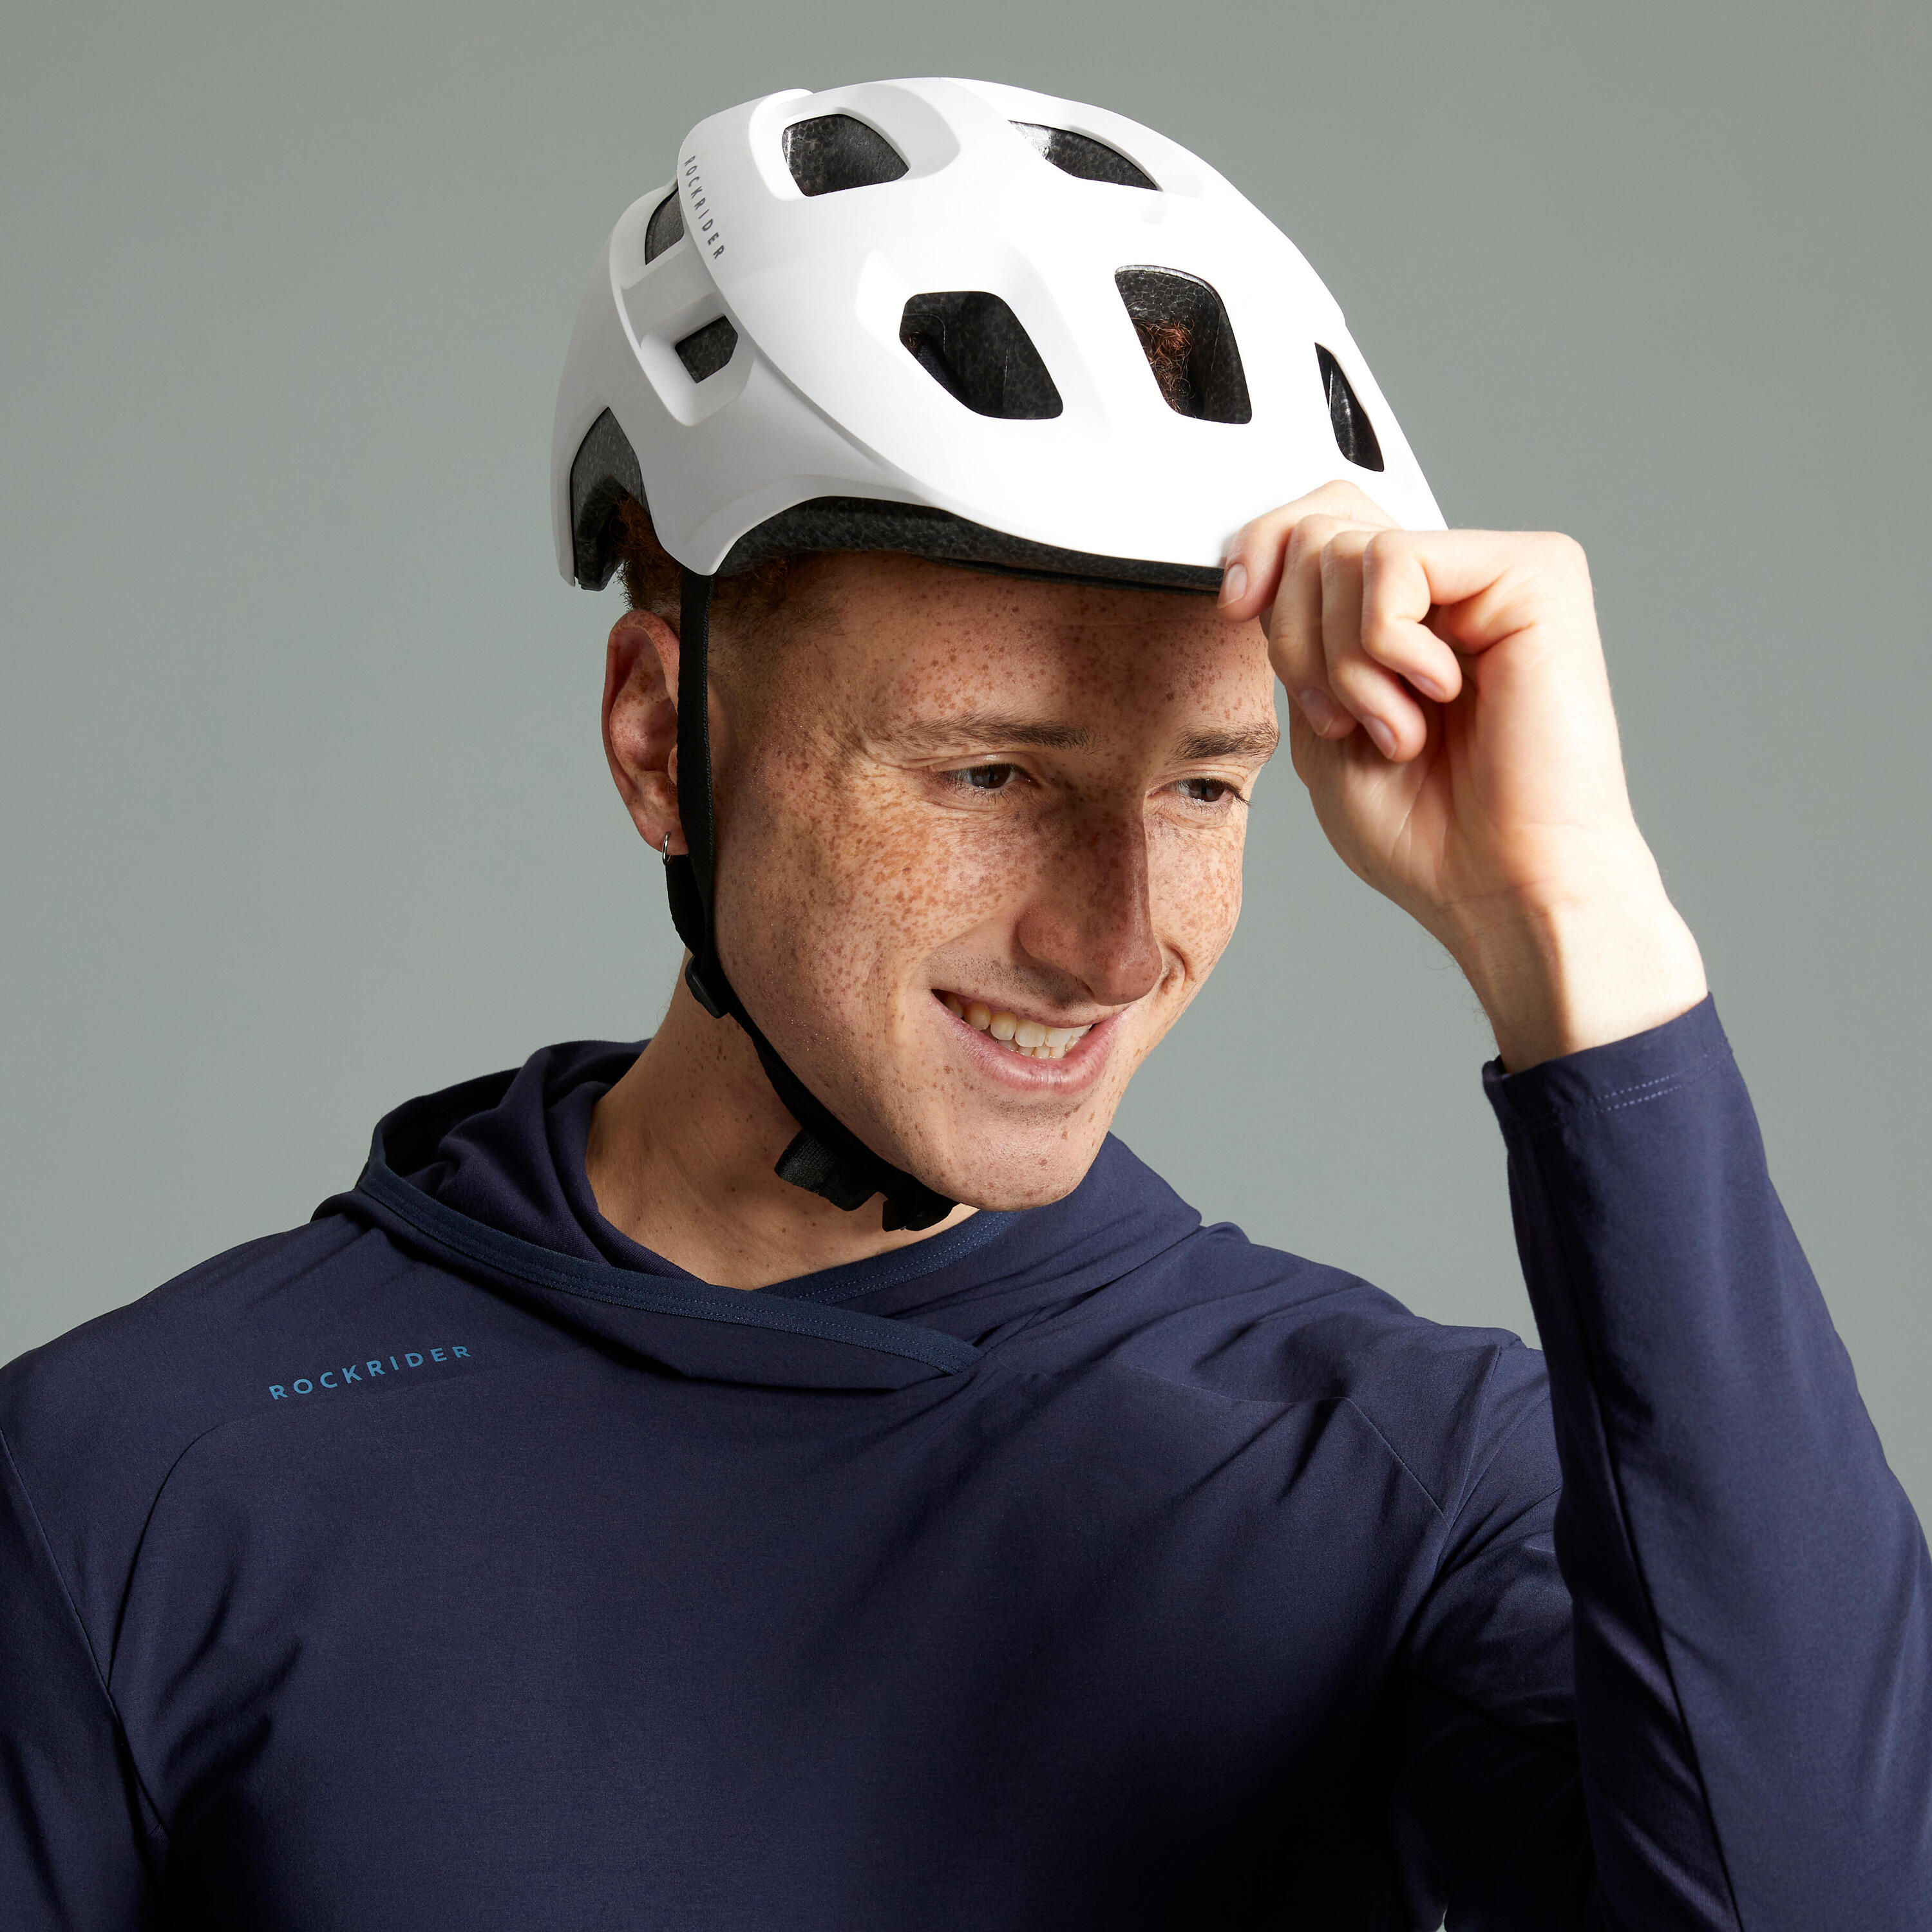 Mountain Bike Helmet EXPL 100 - White 2/9